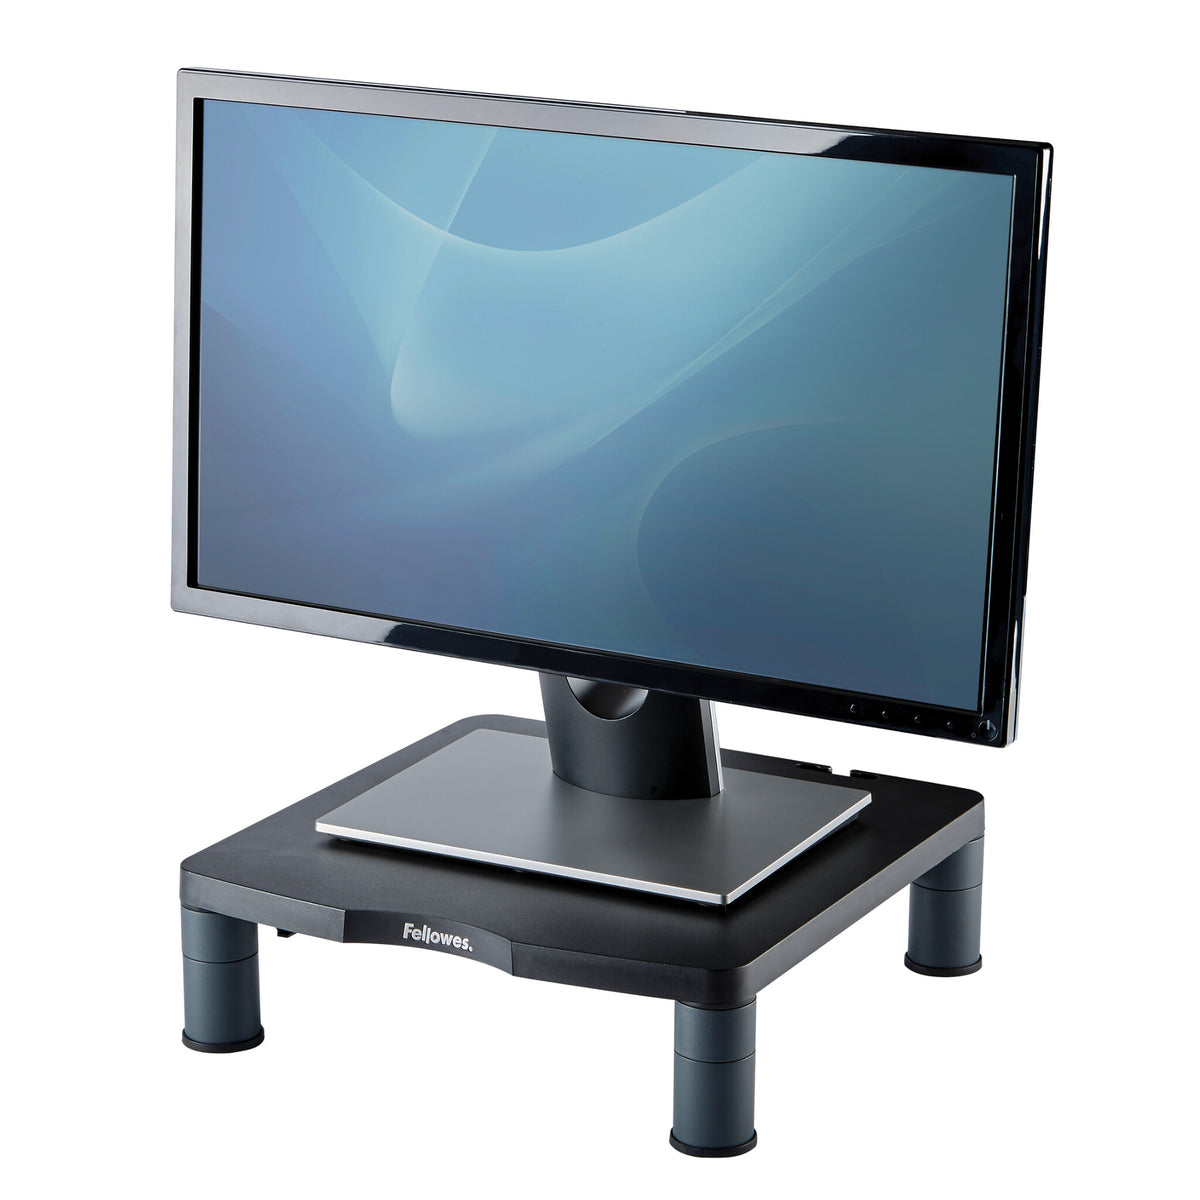 Fellowes 9169301 -  Desk monitor riser